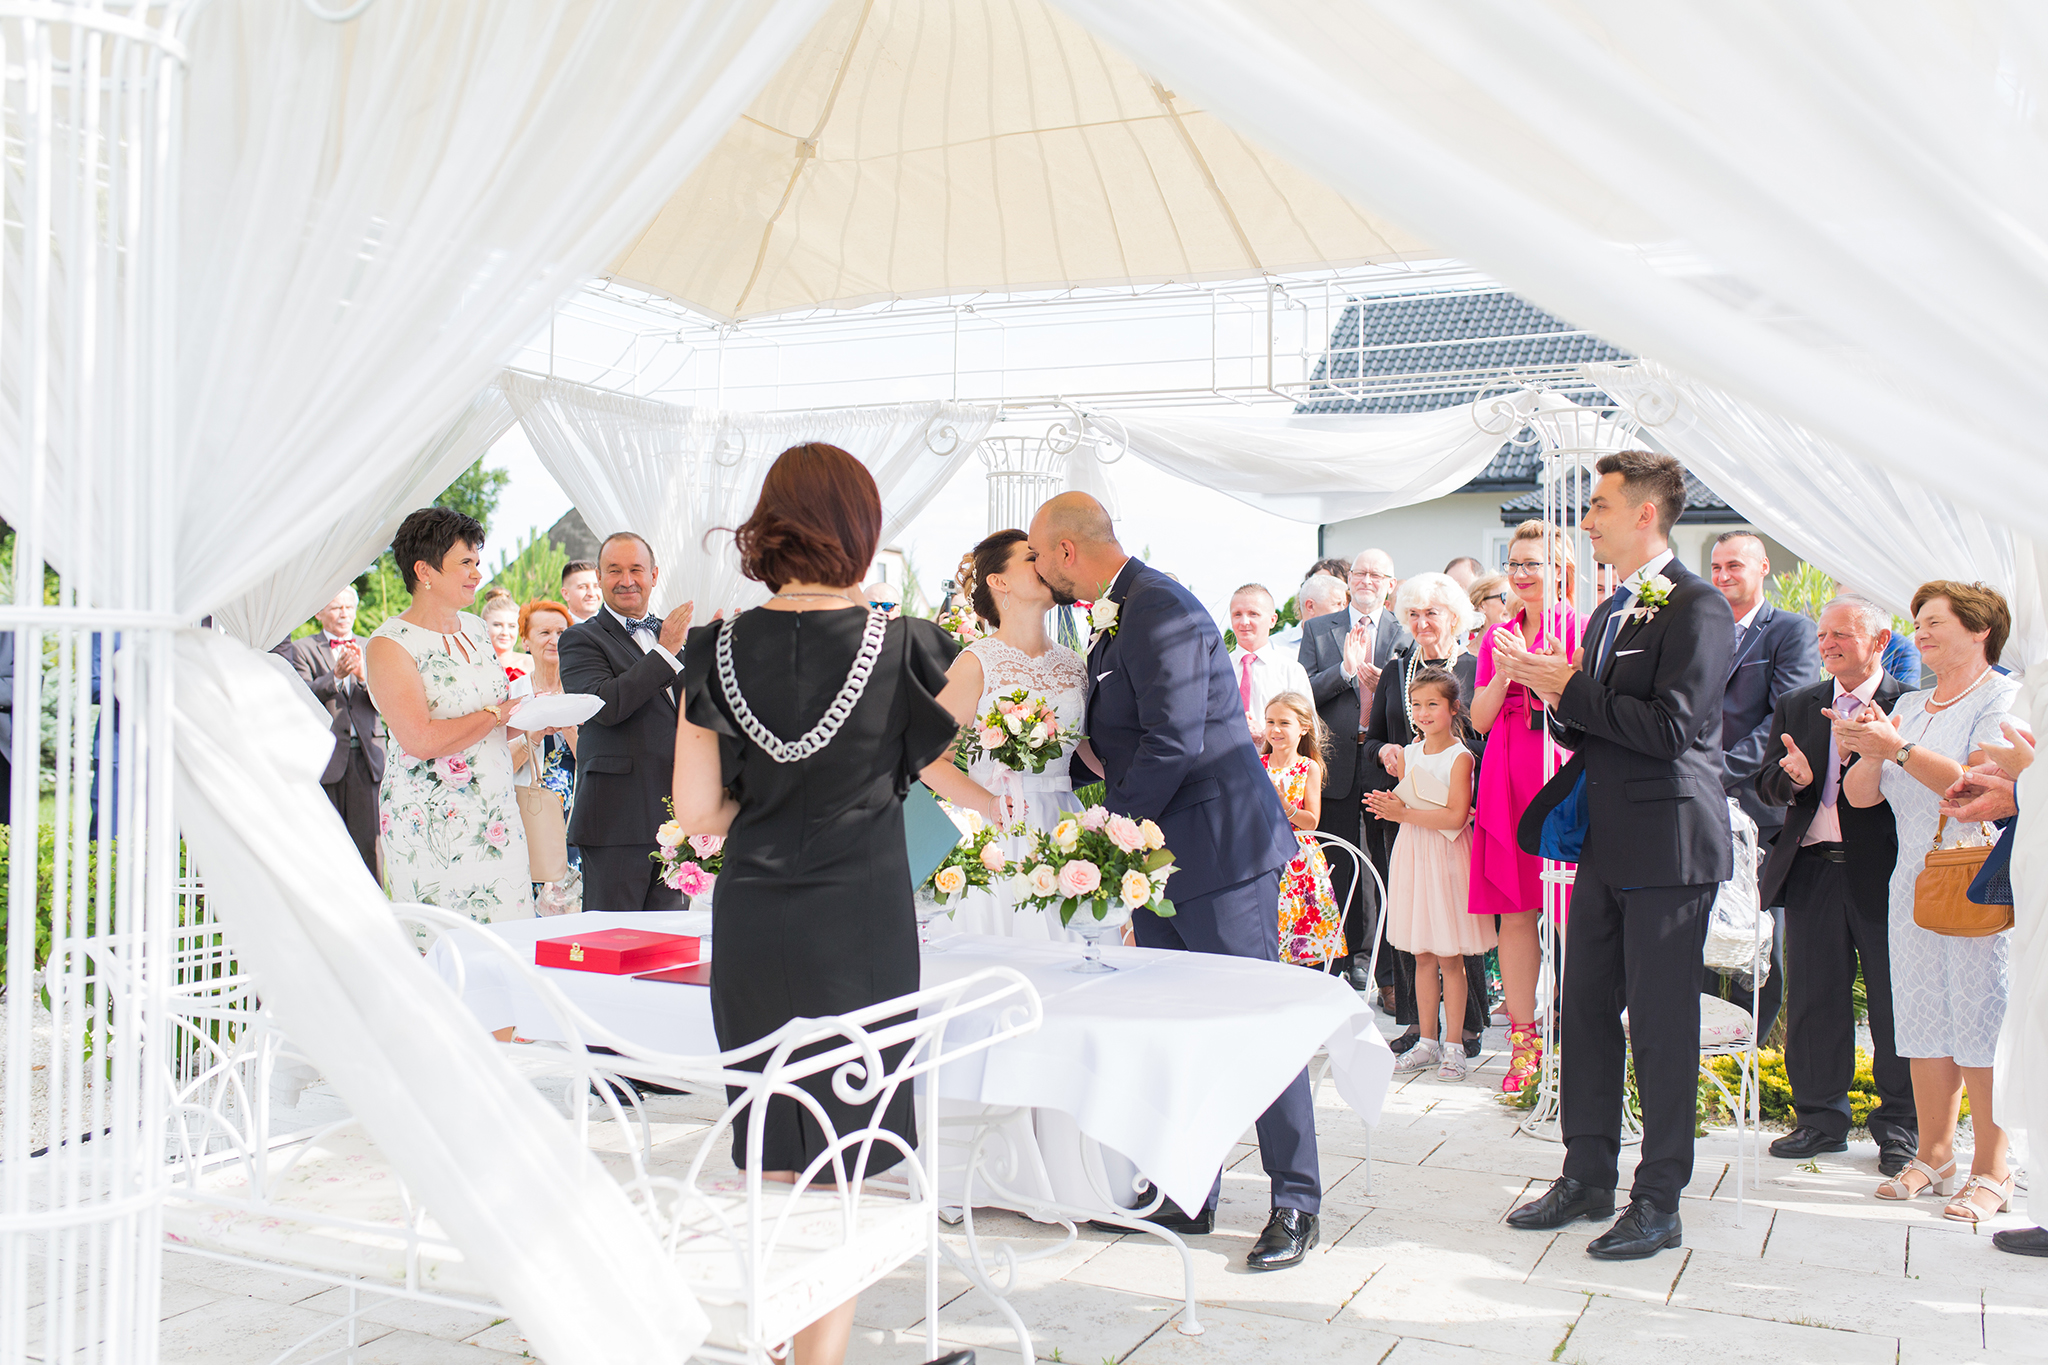 Pięknego, upalnego dnia odbył się romantyczny ślub plenerowy Angeliki i Jacka. Ceremonia zaślubin odbyła się pod śliczną altanką.